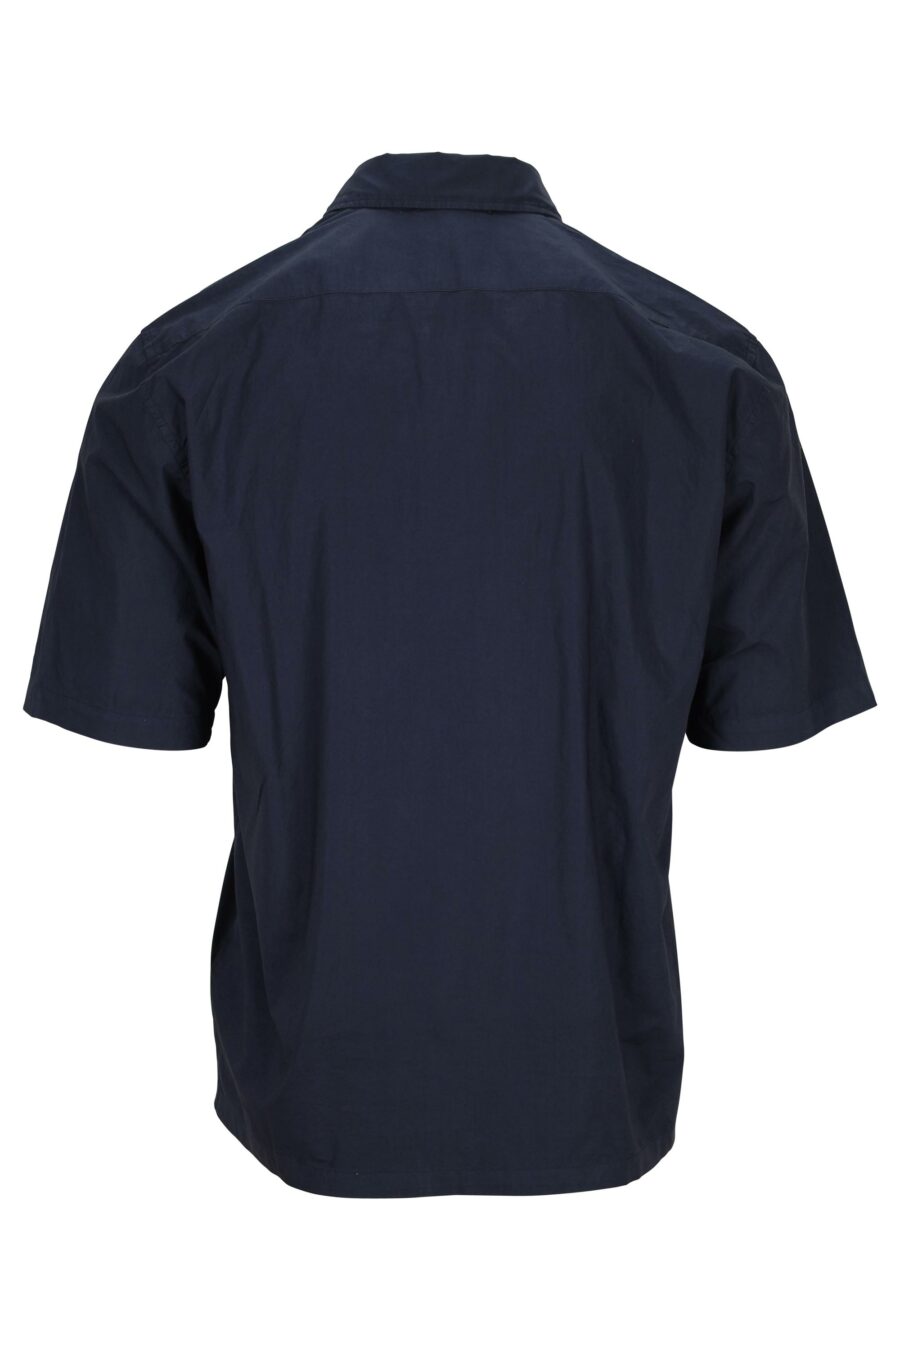 Camisa azul oscuro manga corta con bolsillo y minilogo - 7620943811551 1